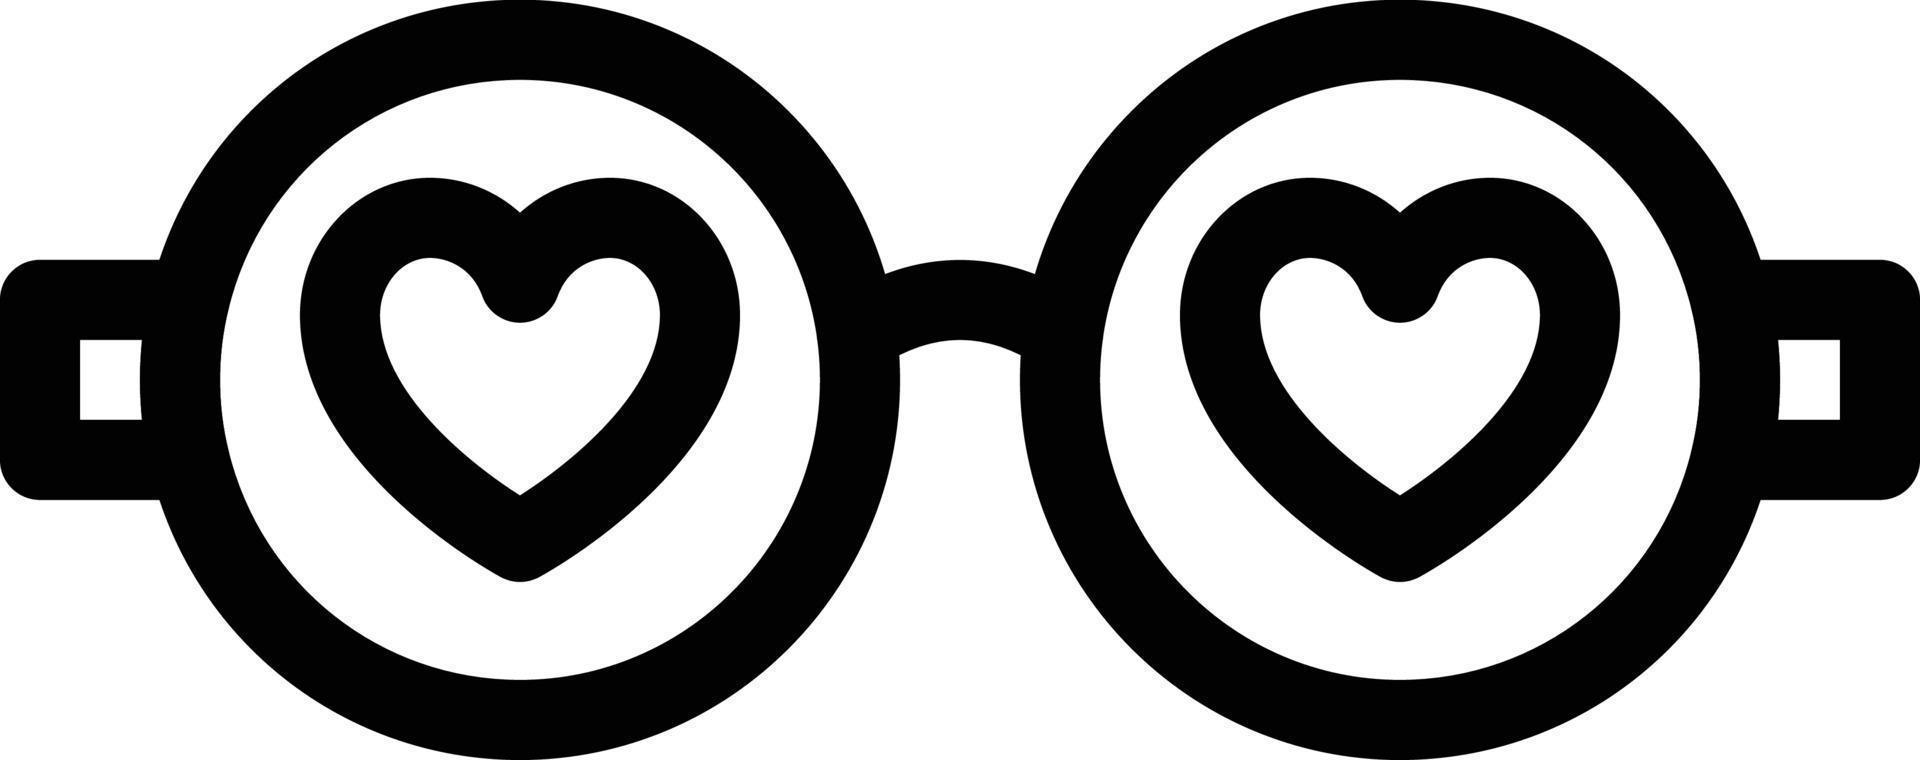 kärlek glasögon vektor illustration på en bakgrund.premium kvalitet symbols.vector ikoner för begrepp och grafisk design.